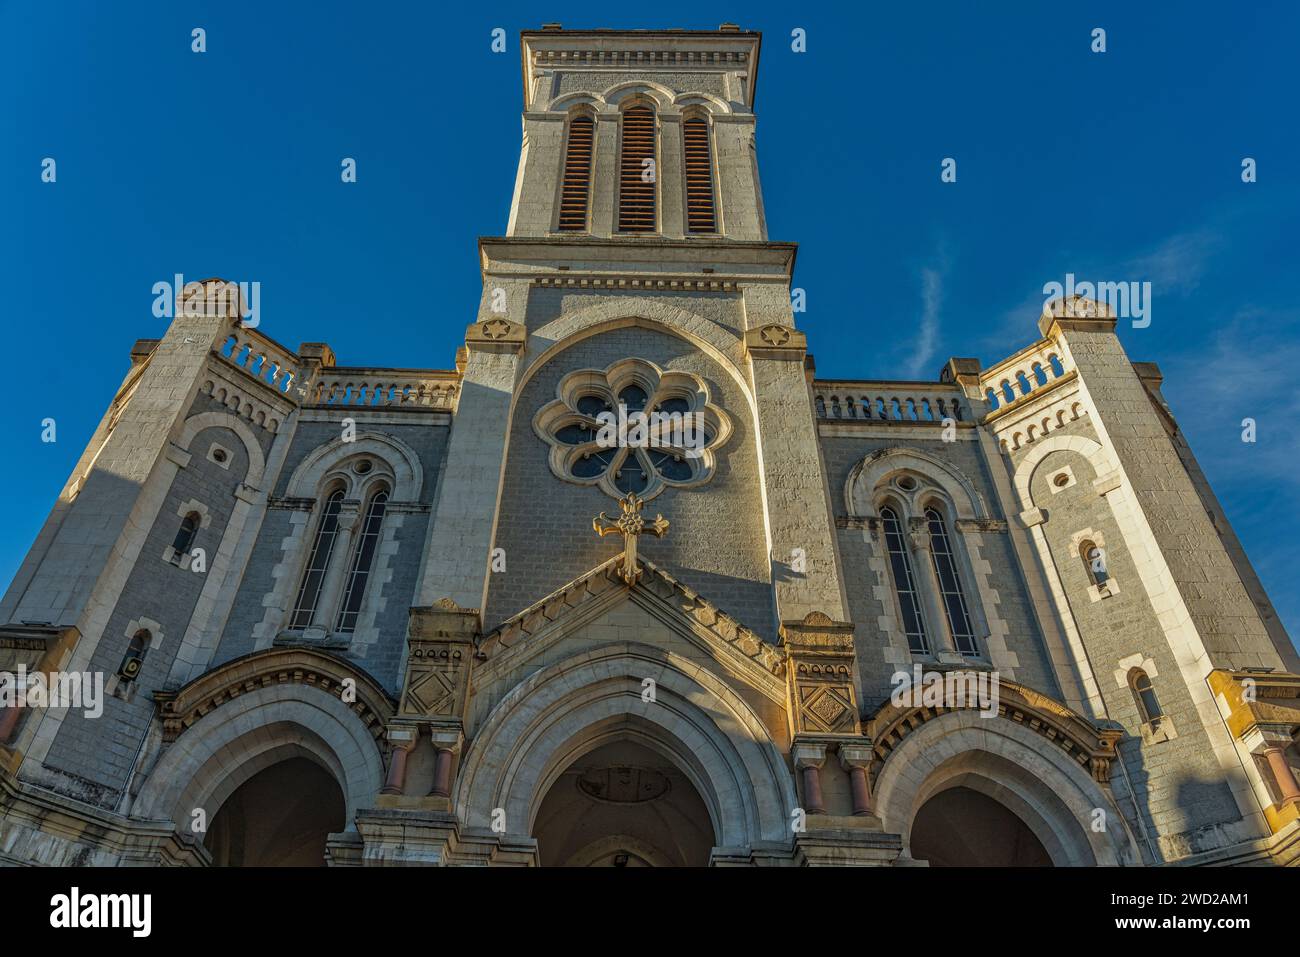 La façade de la cathédrale de la ville de Saint-Étienne dédiée à Saint Charles Borromée. Saint-Étienne, région Auvergne-Rhône-Alpes, France Banque D'Images